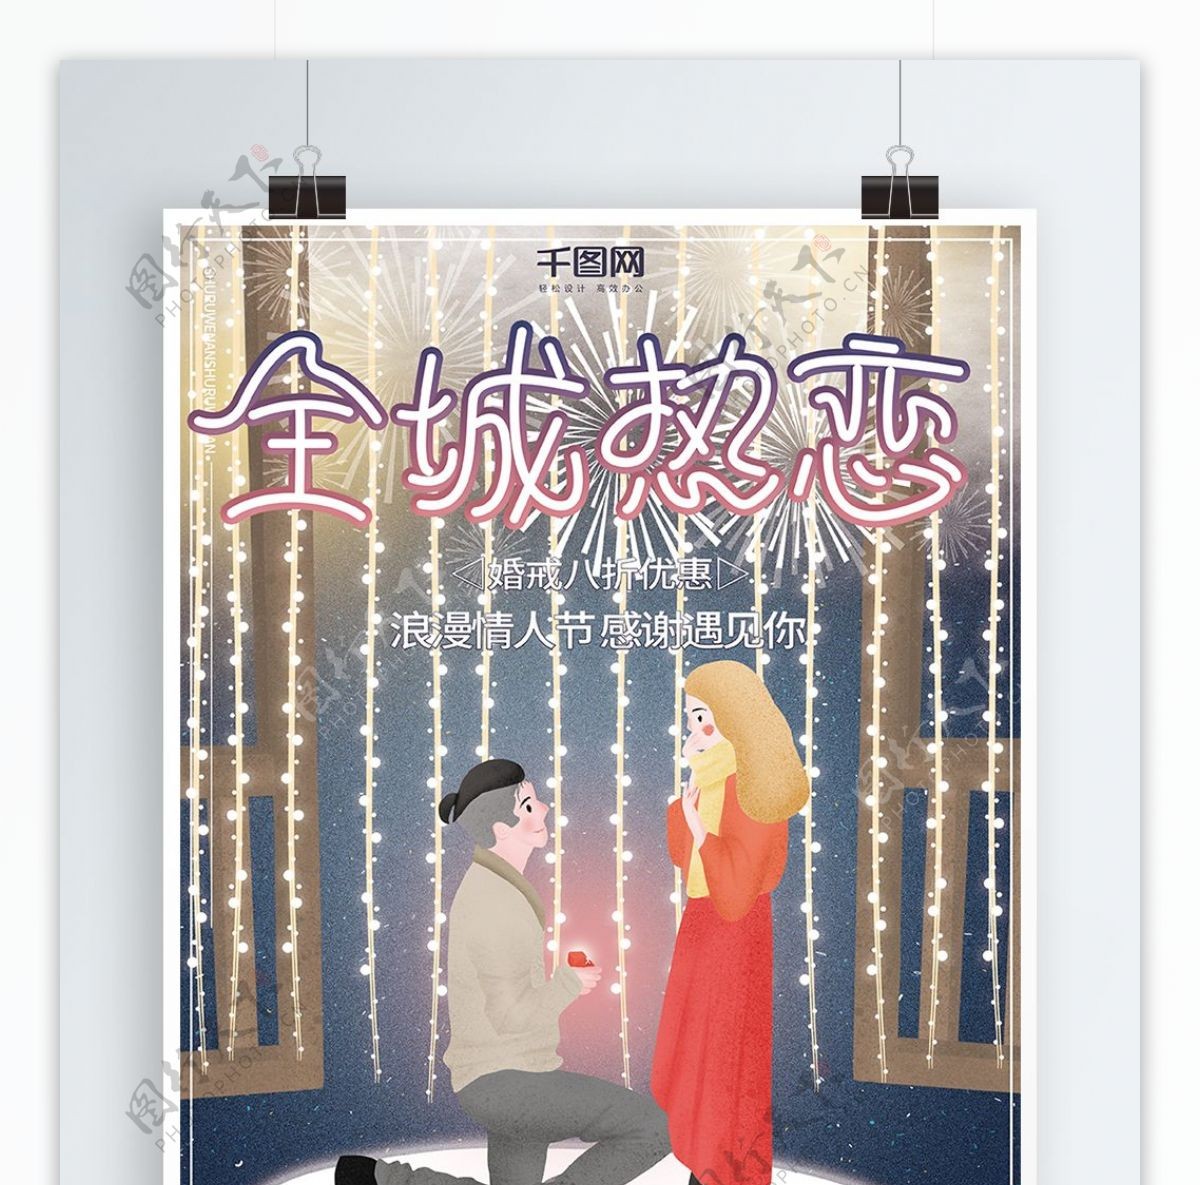 原创插画唯美梦幻2.14情人节促销海报